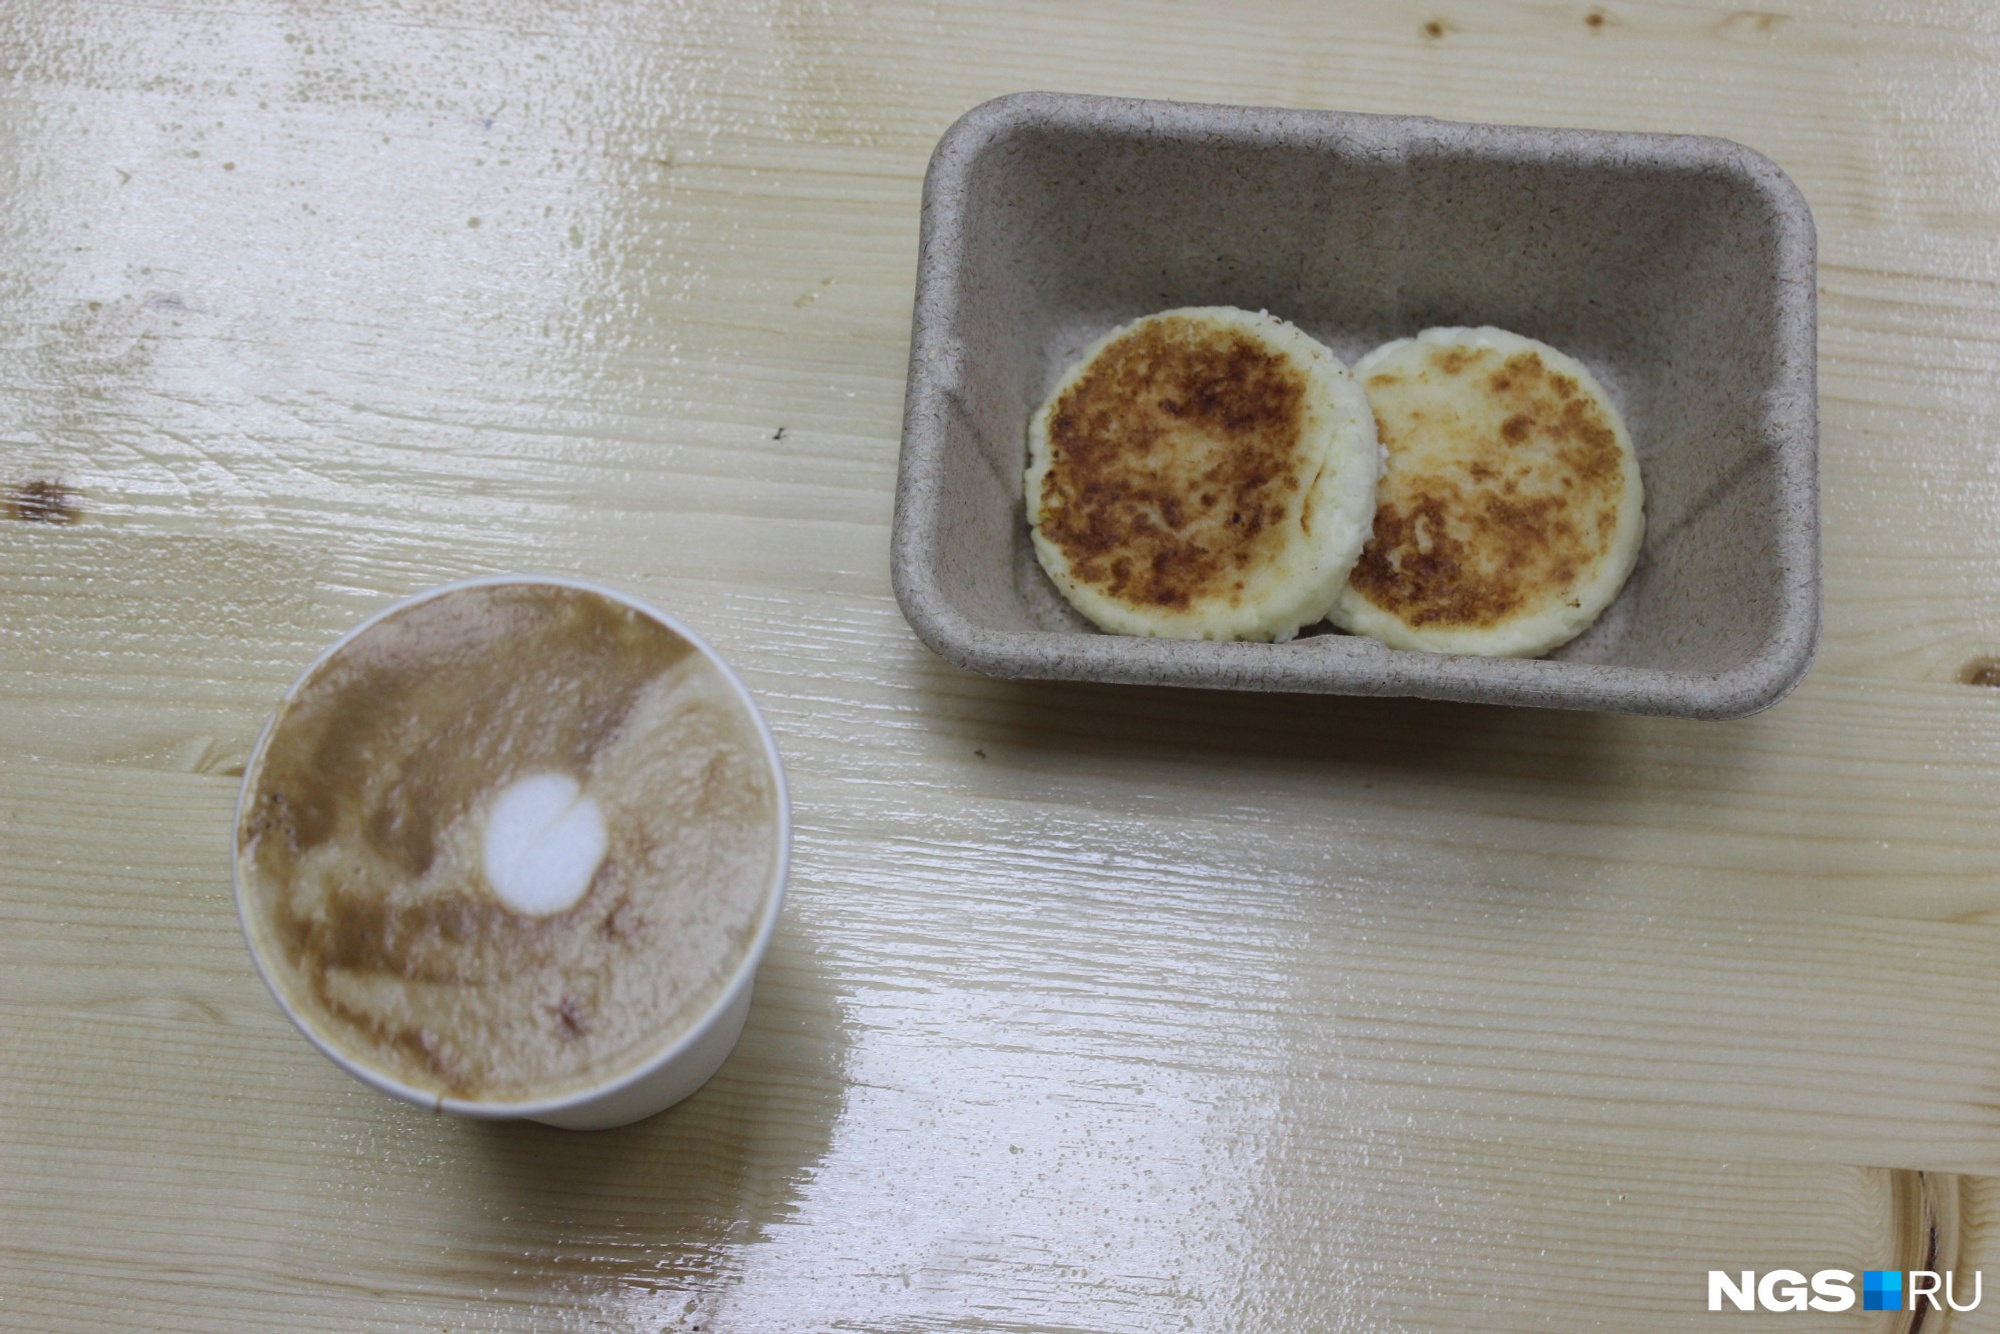 В привычные блюда в кафе добавляют неожиданные ингредиенты. Например, эти сырники сделаны с кокосовой стружкой. Фото Стаса Соколова 